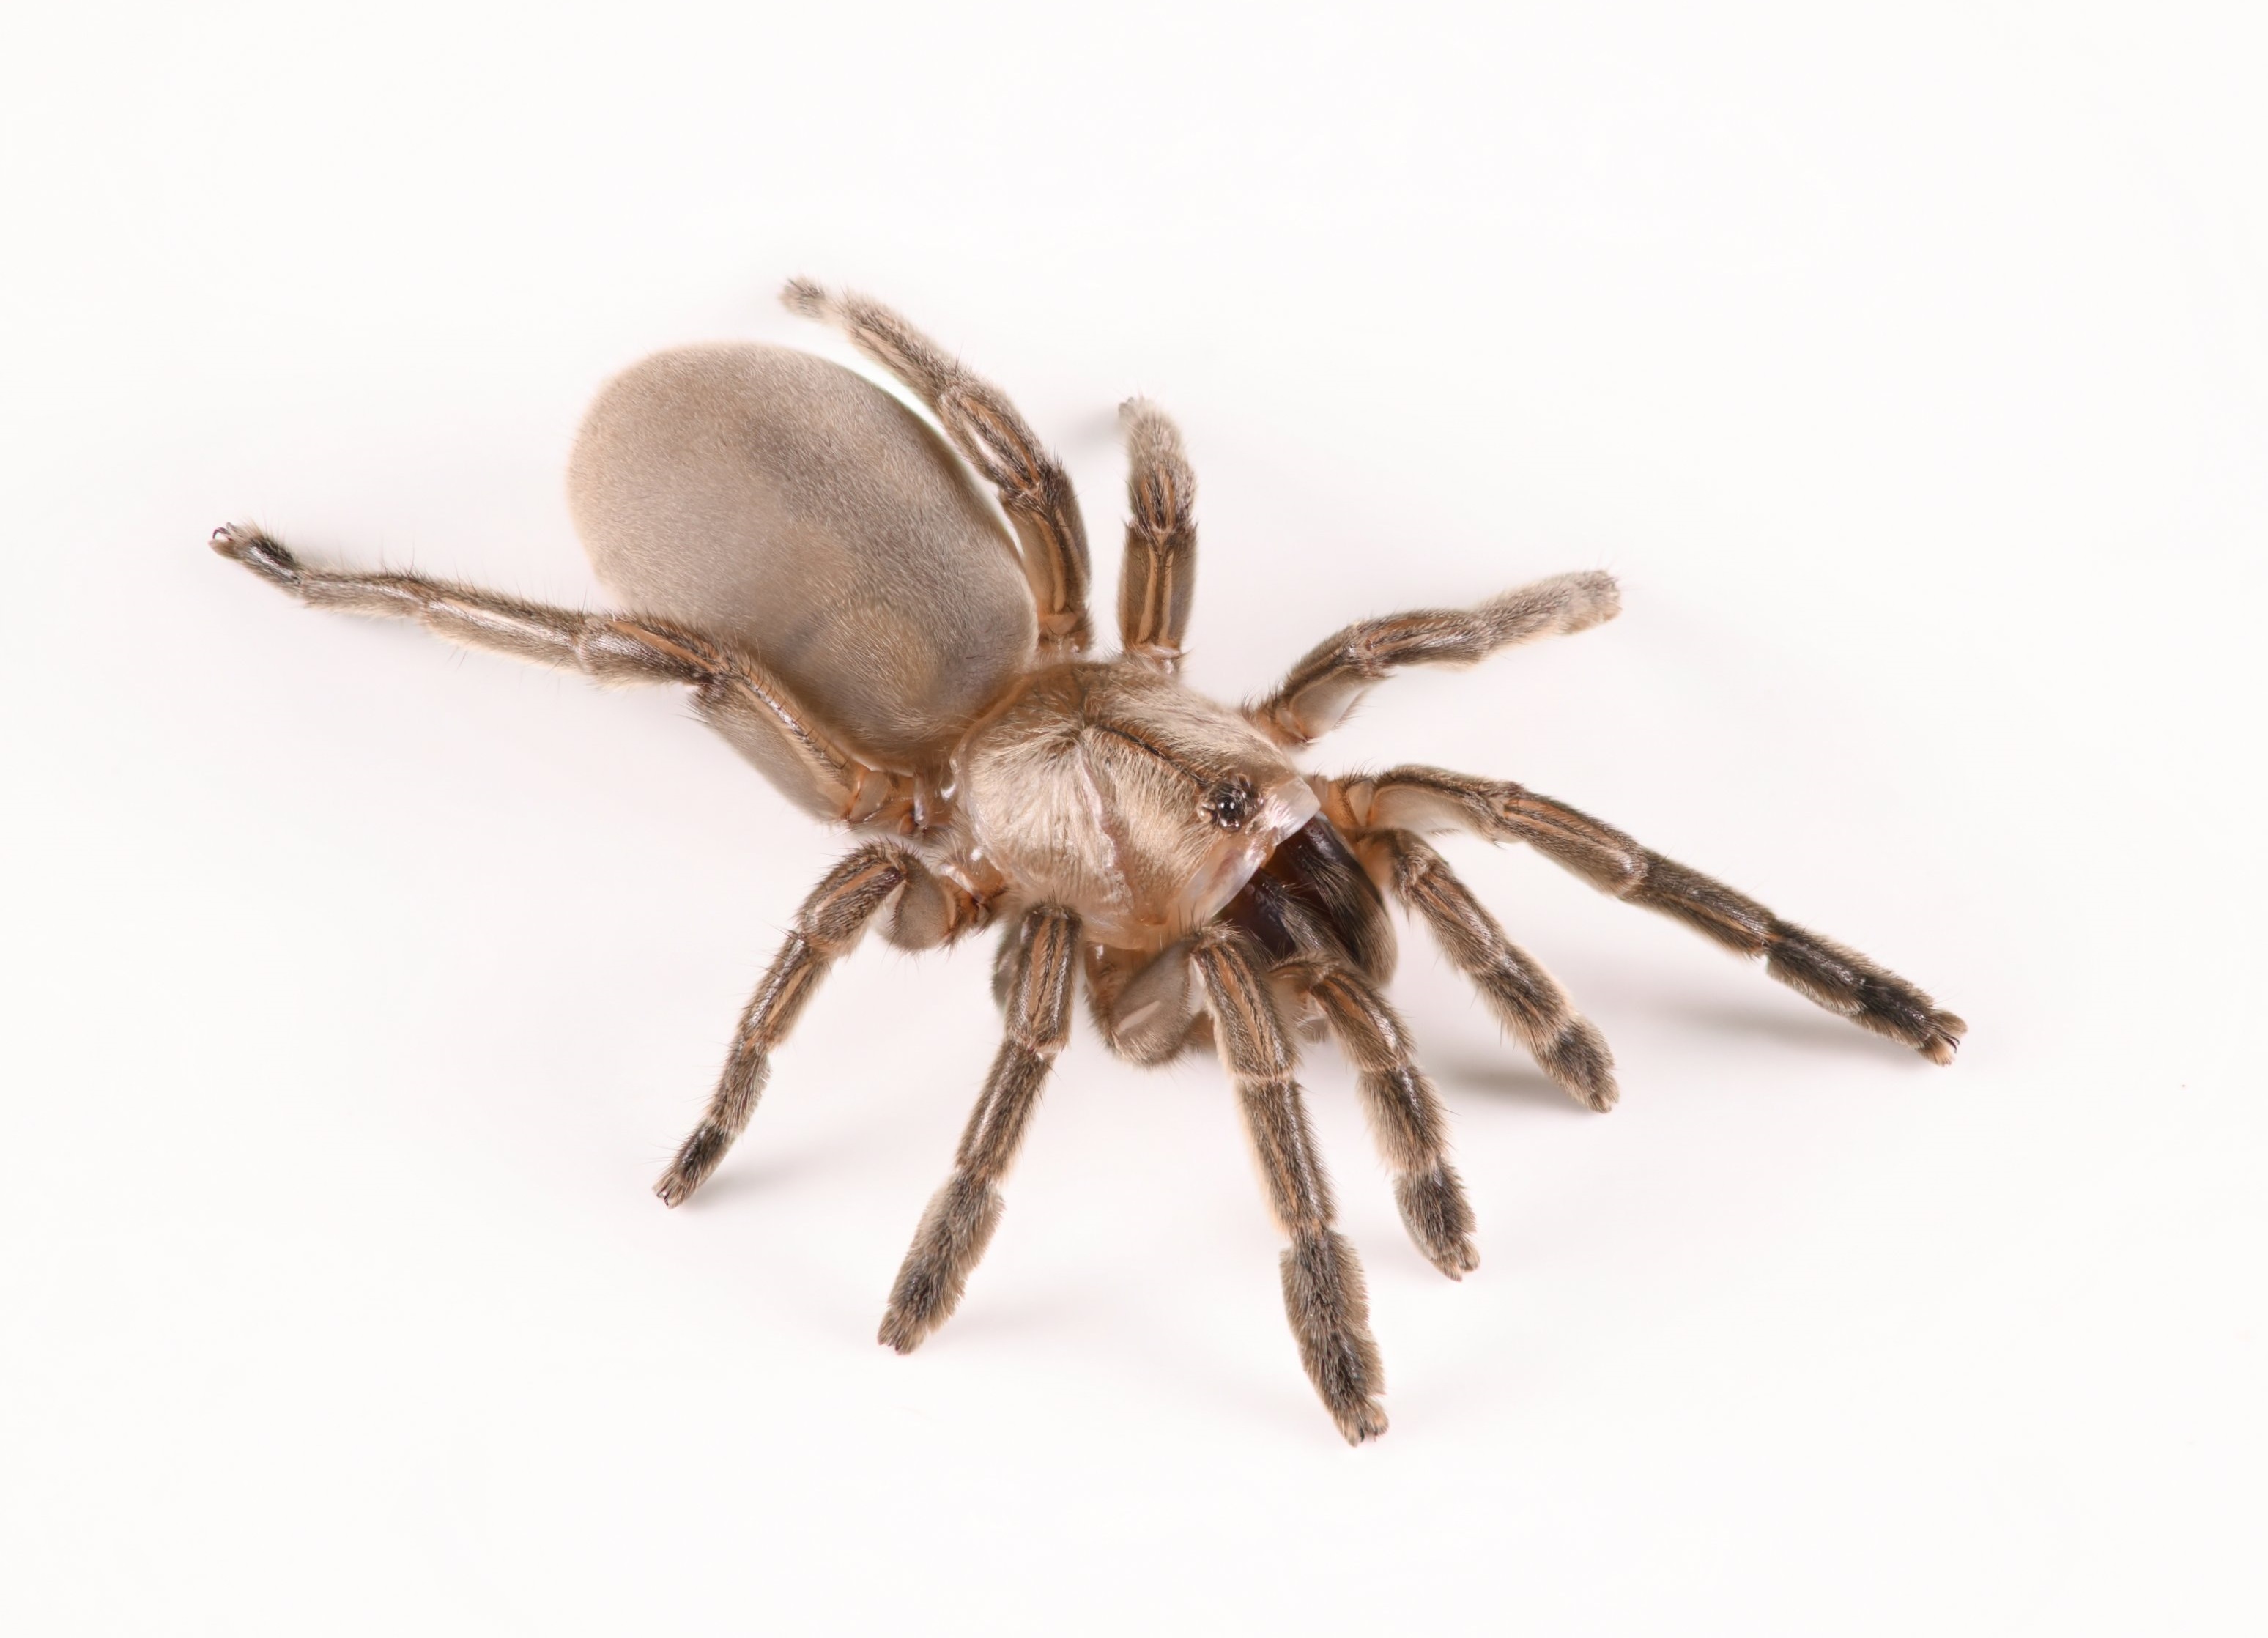 New trapdoor spider species found in arid Karoo region